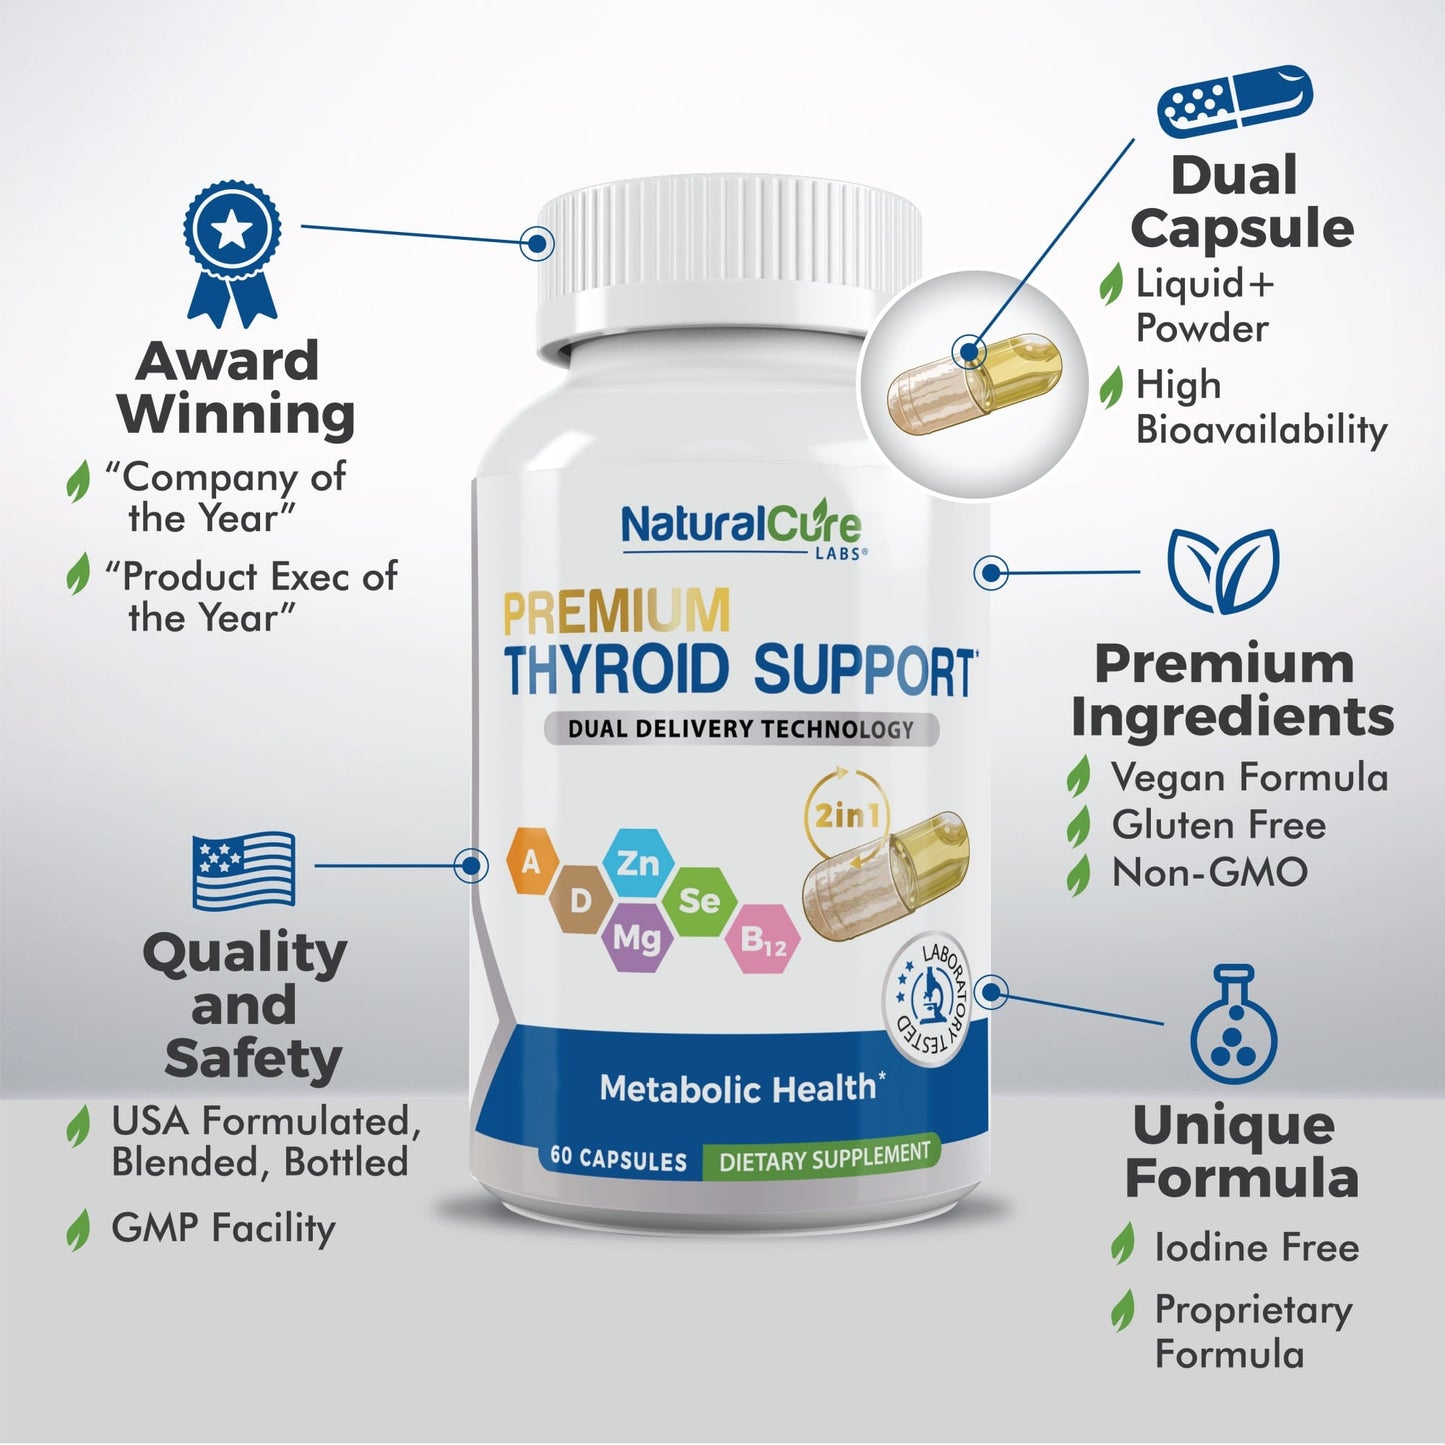 
                  
                    Cápsula dual de soporte para tiroides
                  
                